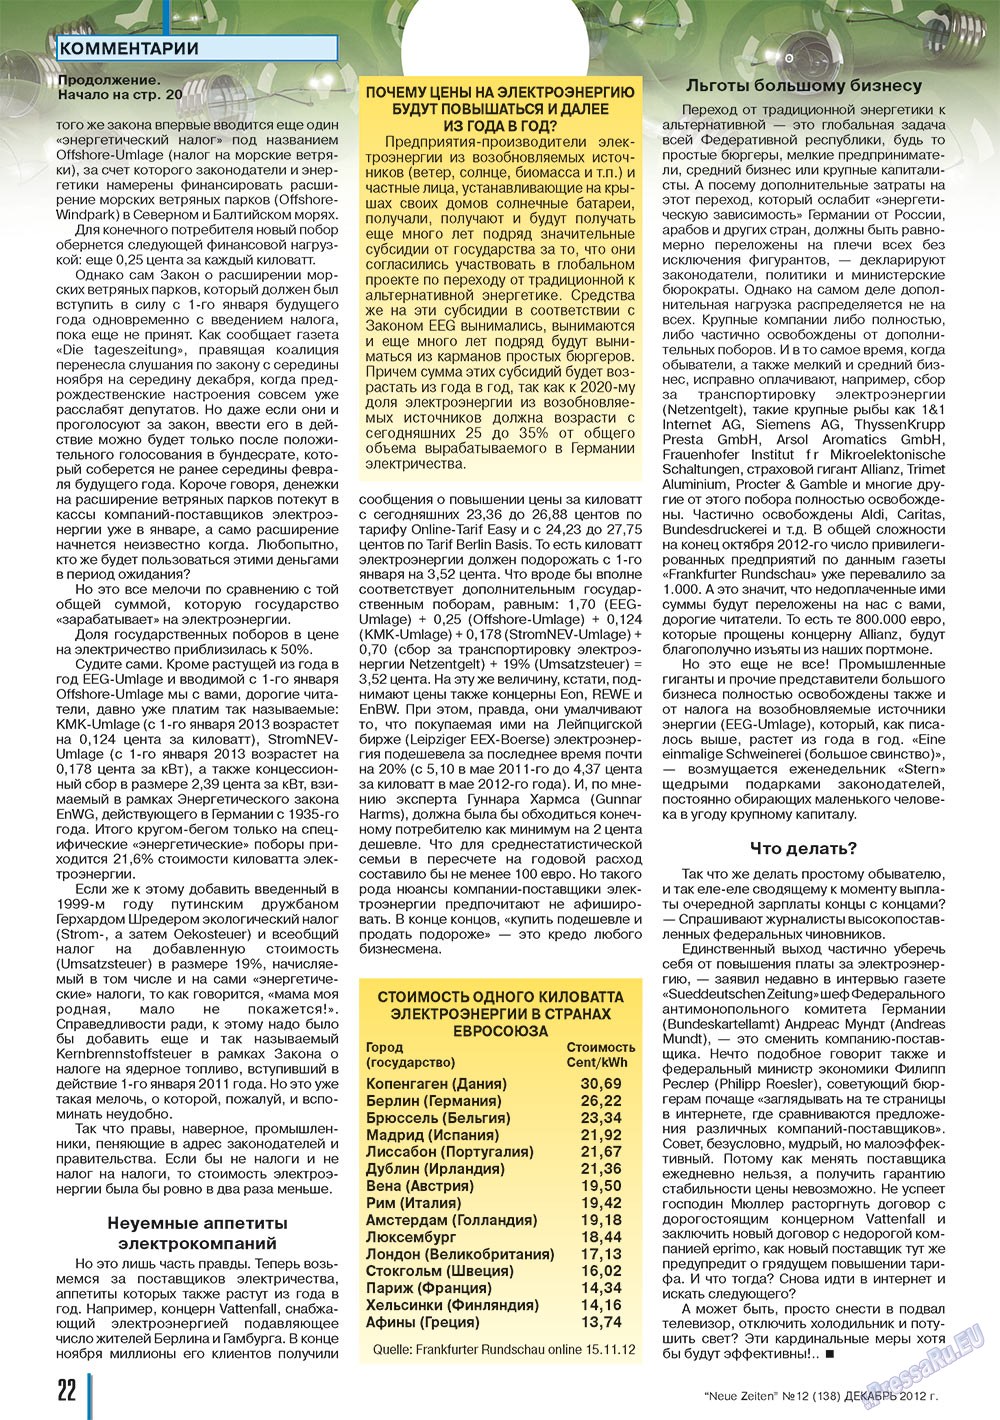 Neue Zeiten, журнал. 2012 №12 стр.22